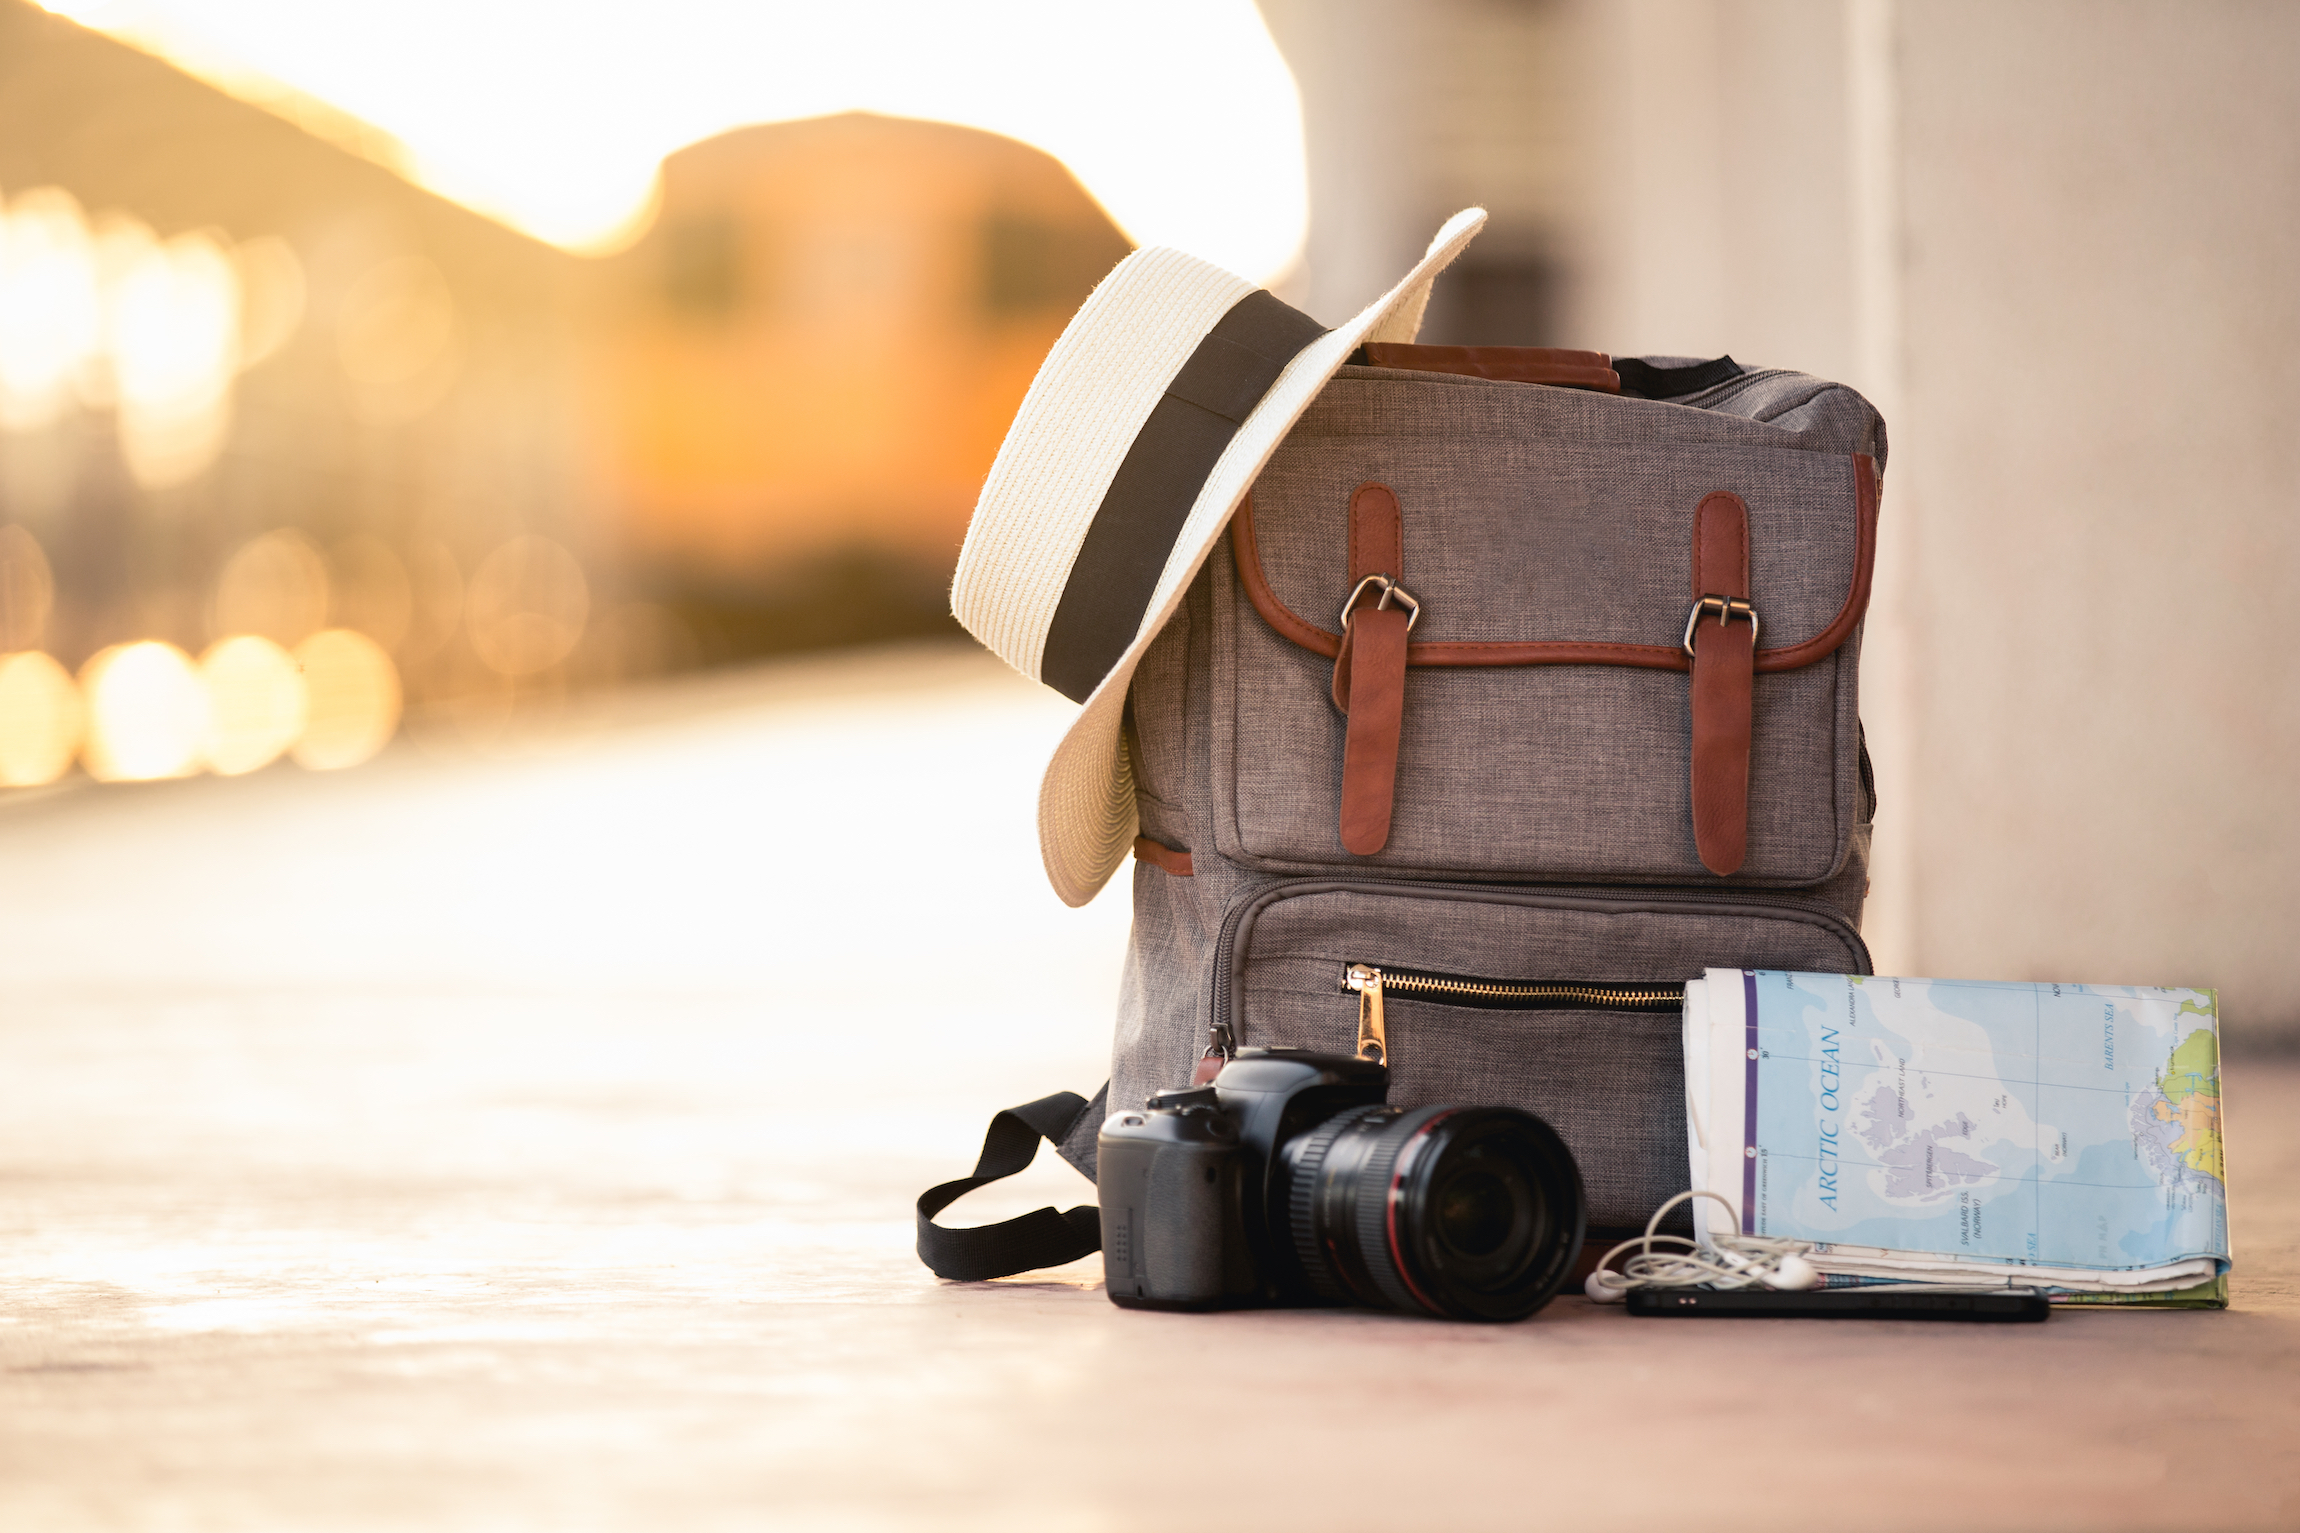 Plecak podróży z kapeluszem, kamerą, mapą, słuchawką i smartfonem na terenie dworca kolejowego o zachodzie słońca pociągu tła. podróż i plecak koncepcja.